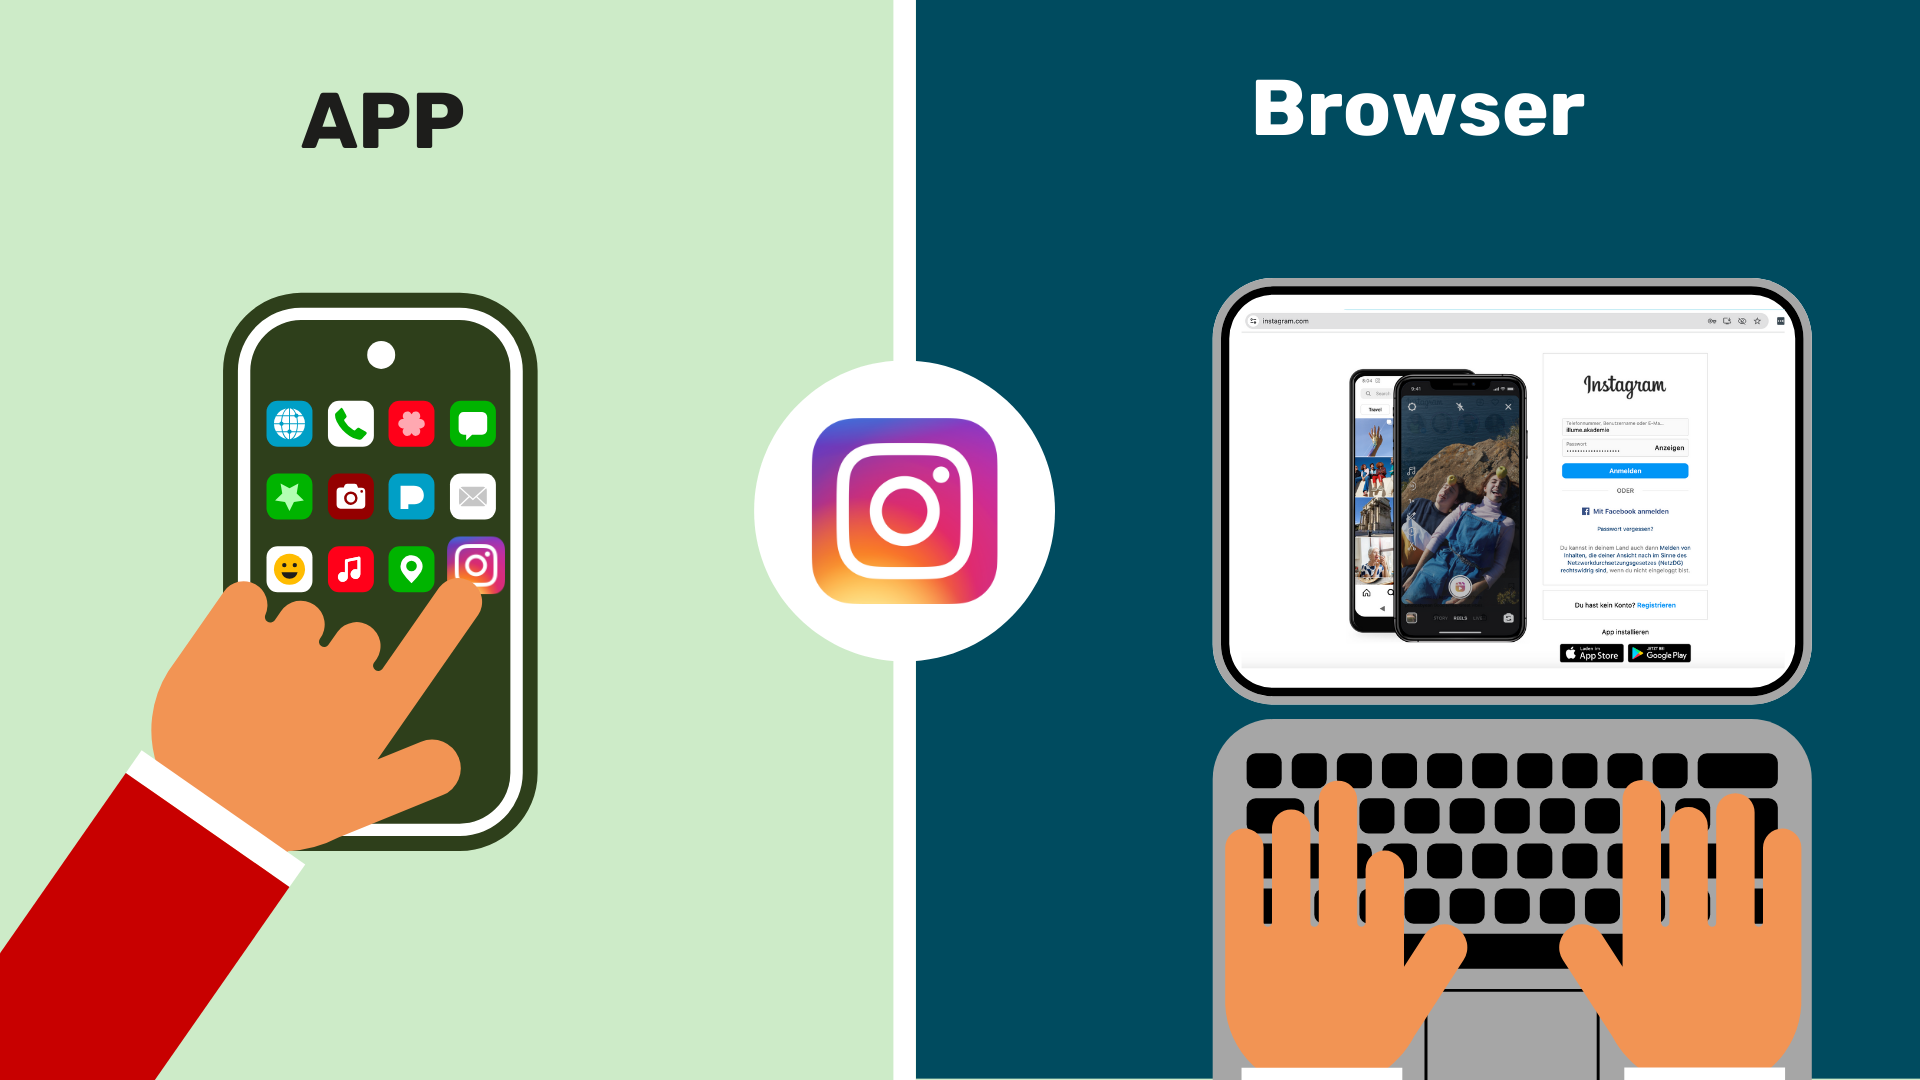 Zweigeteiltes Bild in der Mitte ist das Instagram Symbol zu sehen. Links steht "App" darunter ein Smartphone mit verschiedenen Apps. Eine Hand zeigt auf die Instagram App. Auf der rechten Seite steht "Browser". Darunter ein Laptop mit einer geöffneten Instagram-Seite.